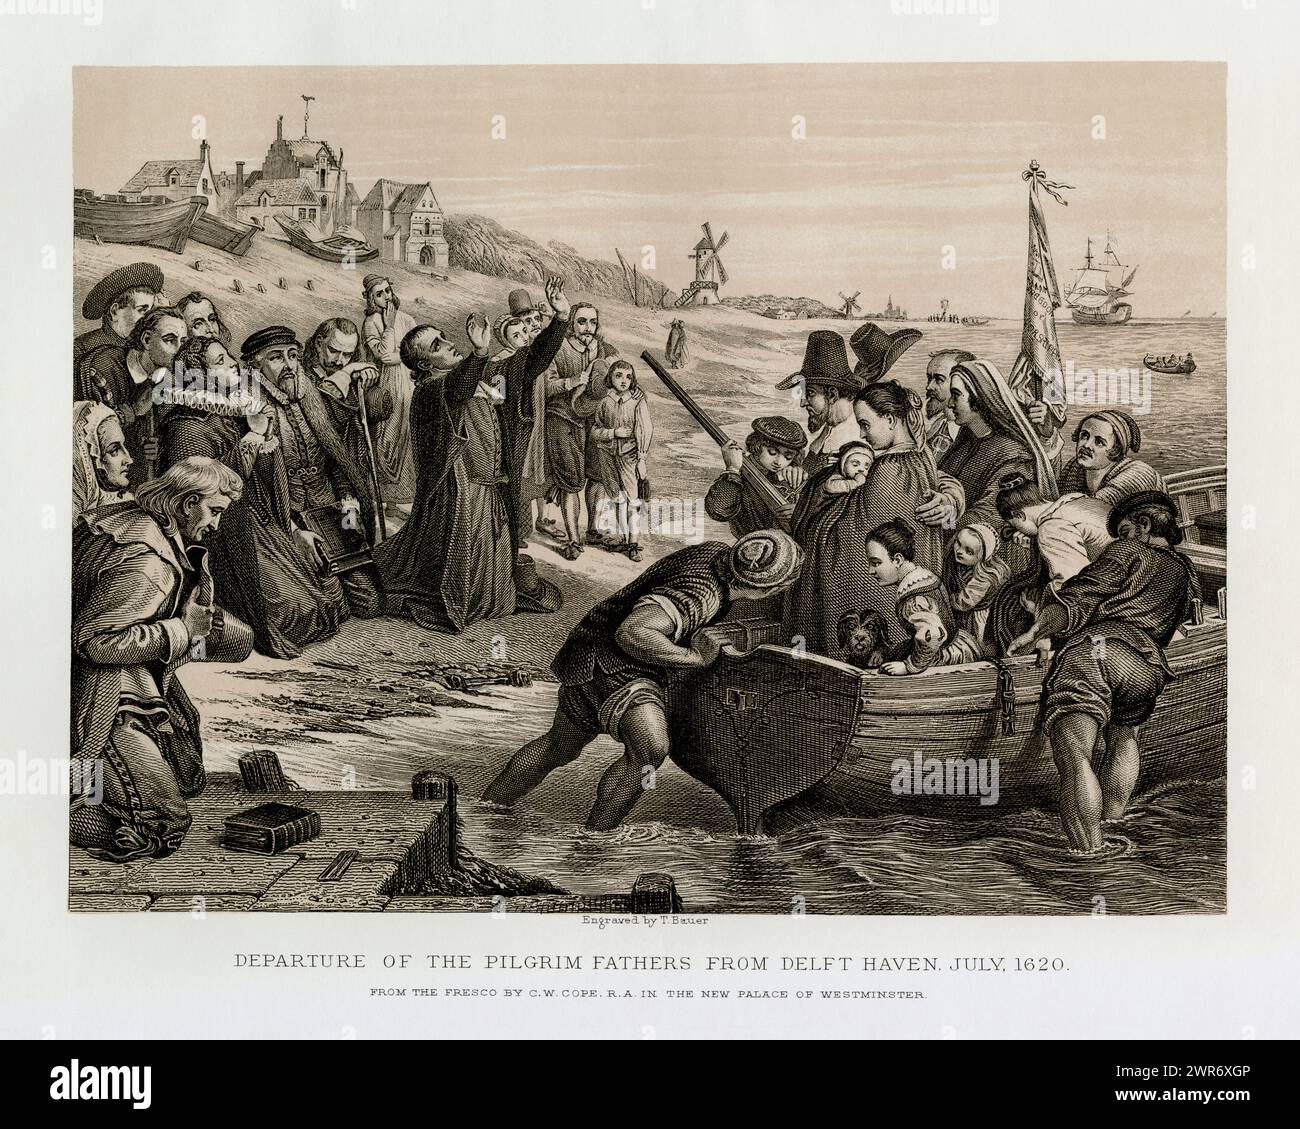 Die Pilgerväter starten im Juli 1620 von Delfshaven, dem ehemaligen Hafen von Delft, in den Niederlanden. Antike Sepia-Stiche, erstmals 1878 veröffentlicht. Stich von T. Bauer nach einem Fresko von Charles West Cope R.A. Stockfoto